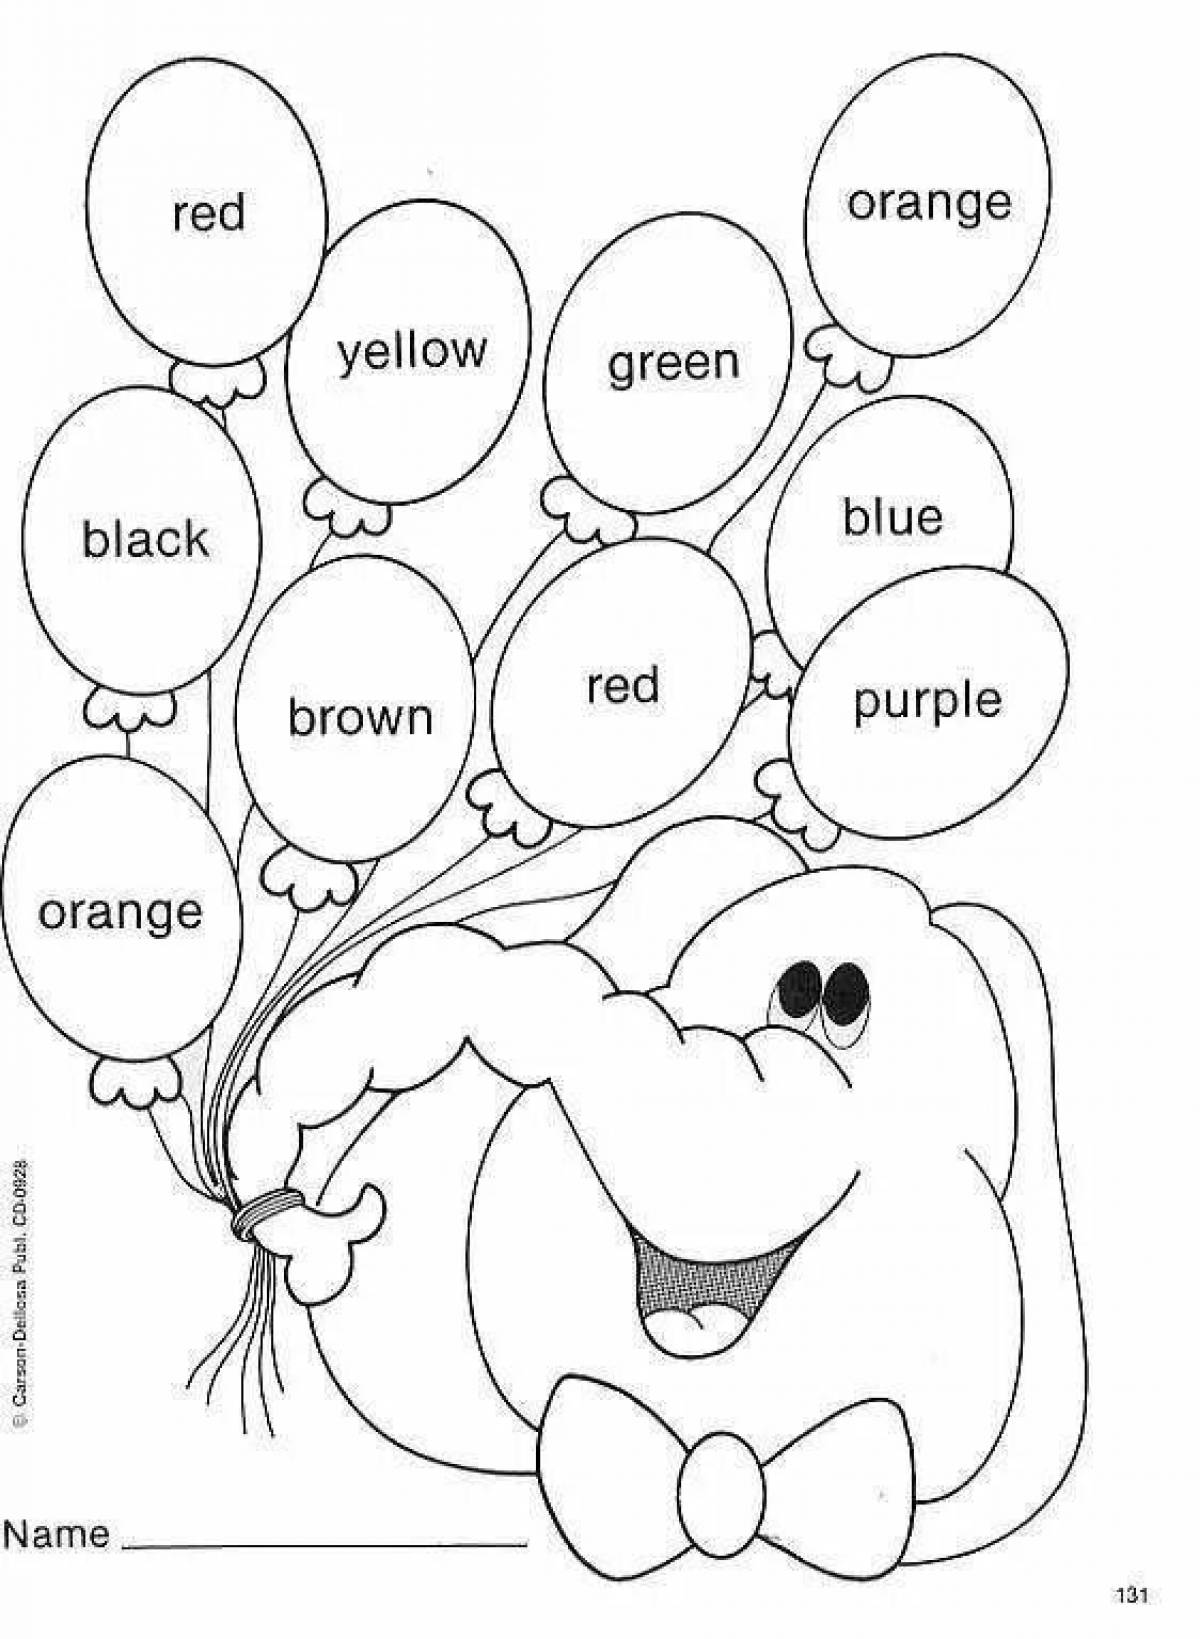 5 слов по теме цвета